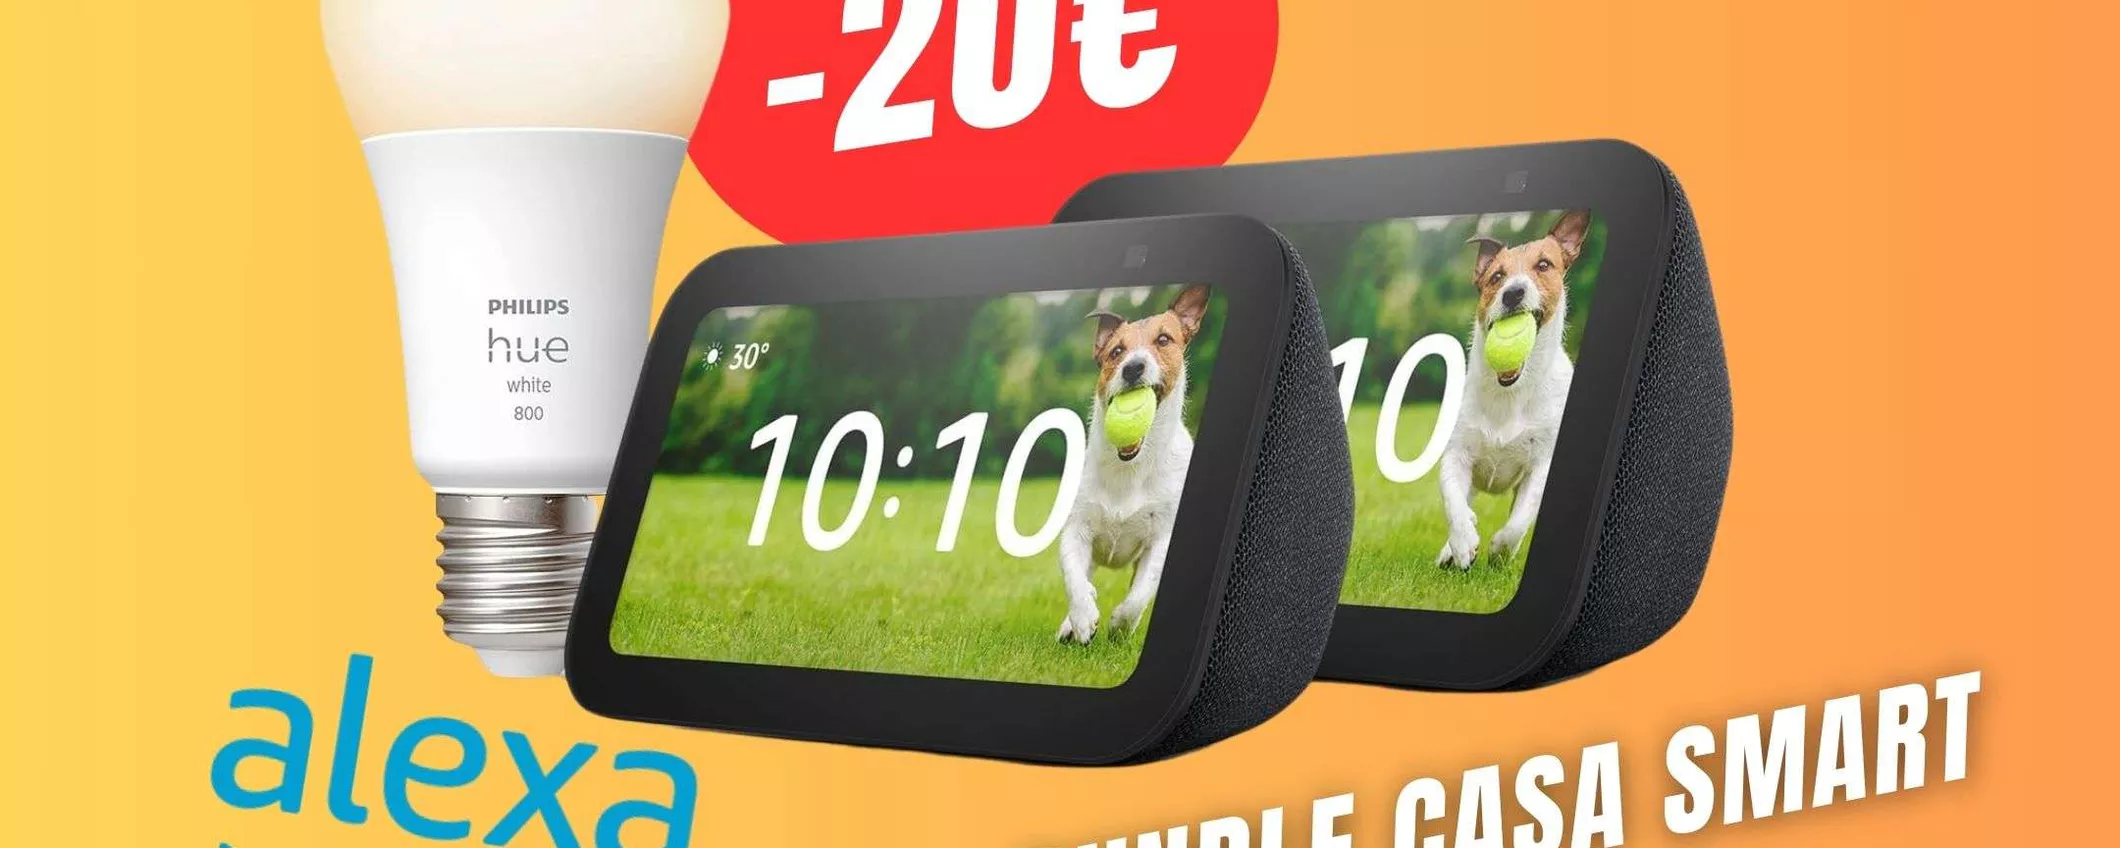 Il Bundle Amazon Alexa con 2 Echo Show + Lampadina Philips Hue è scontato di ben 20€!